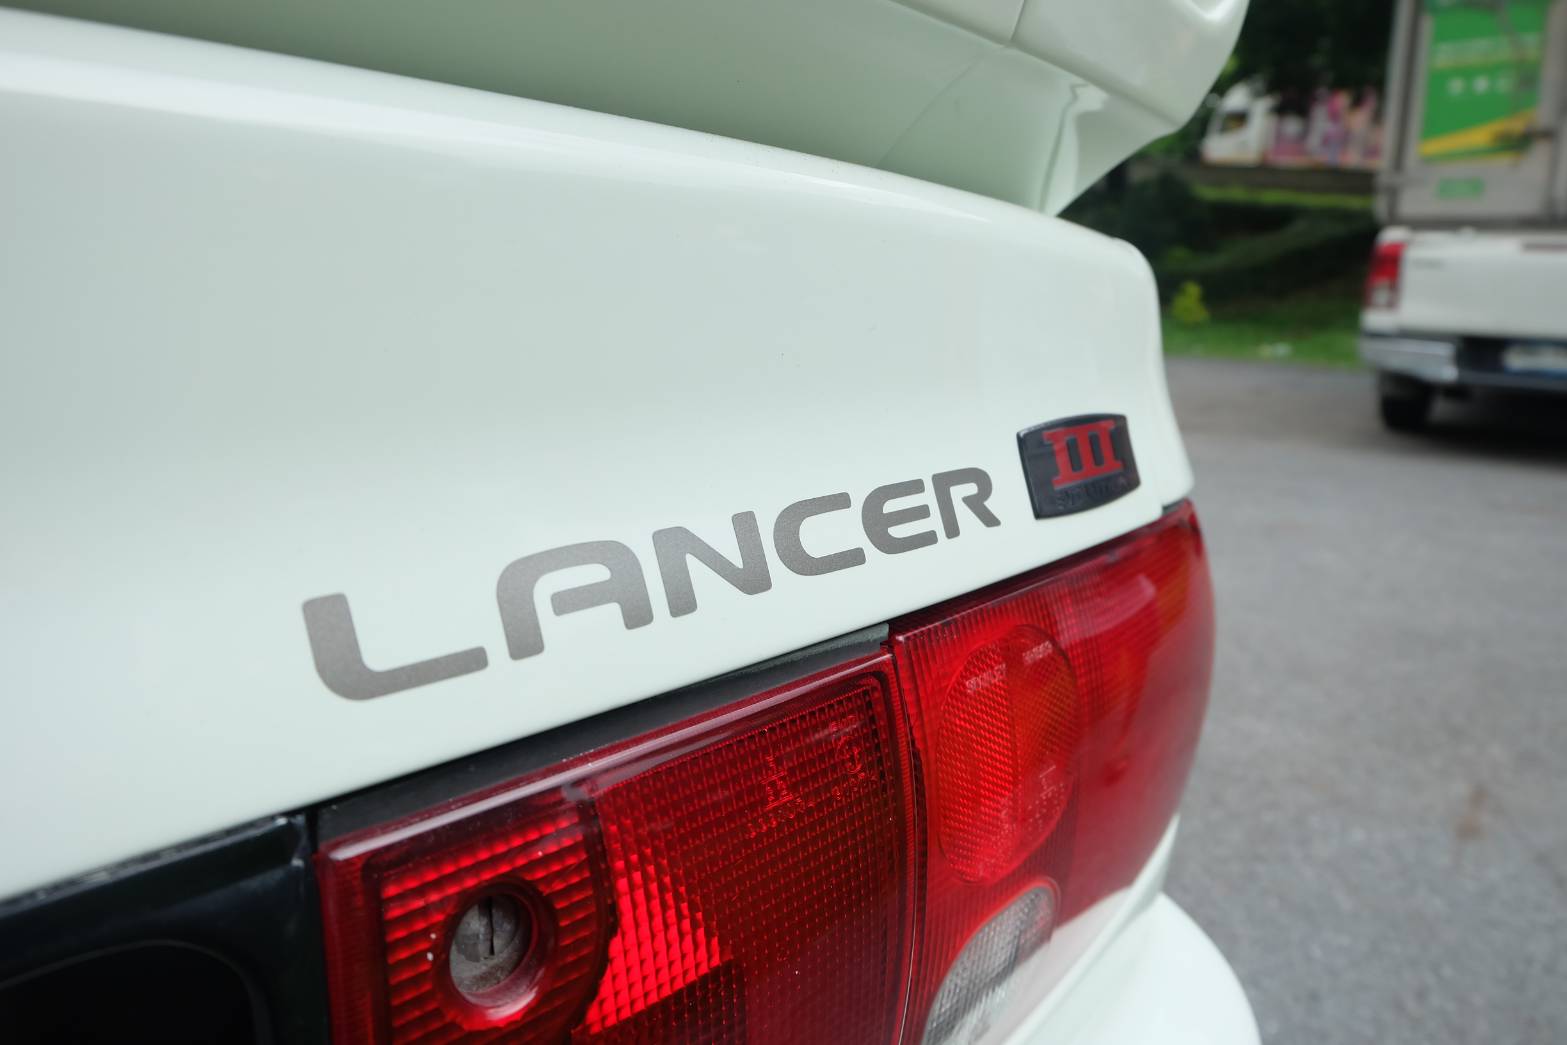 1992 Mitsubishi Lancer E-CAR สีขาว